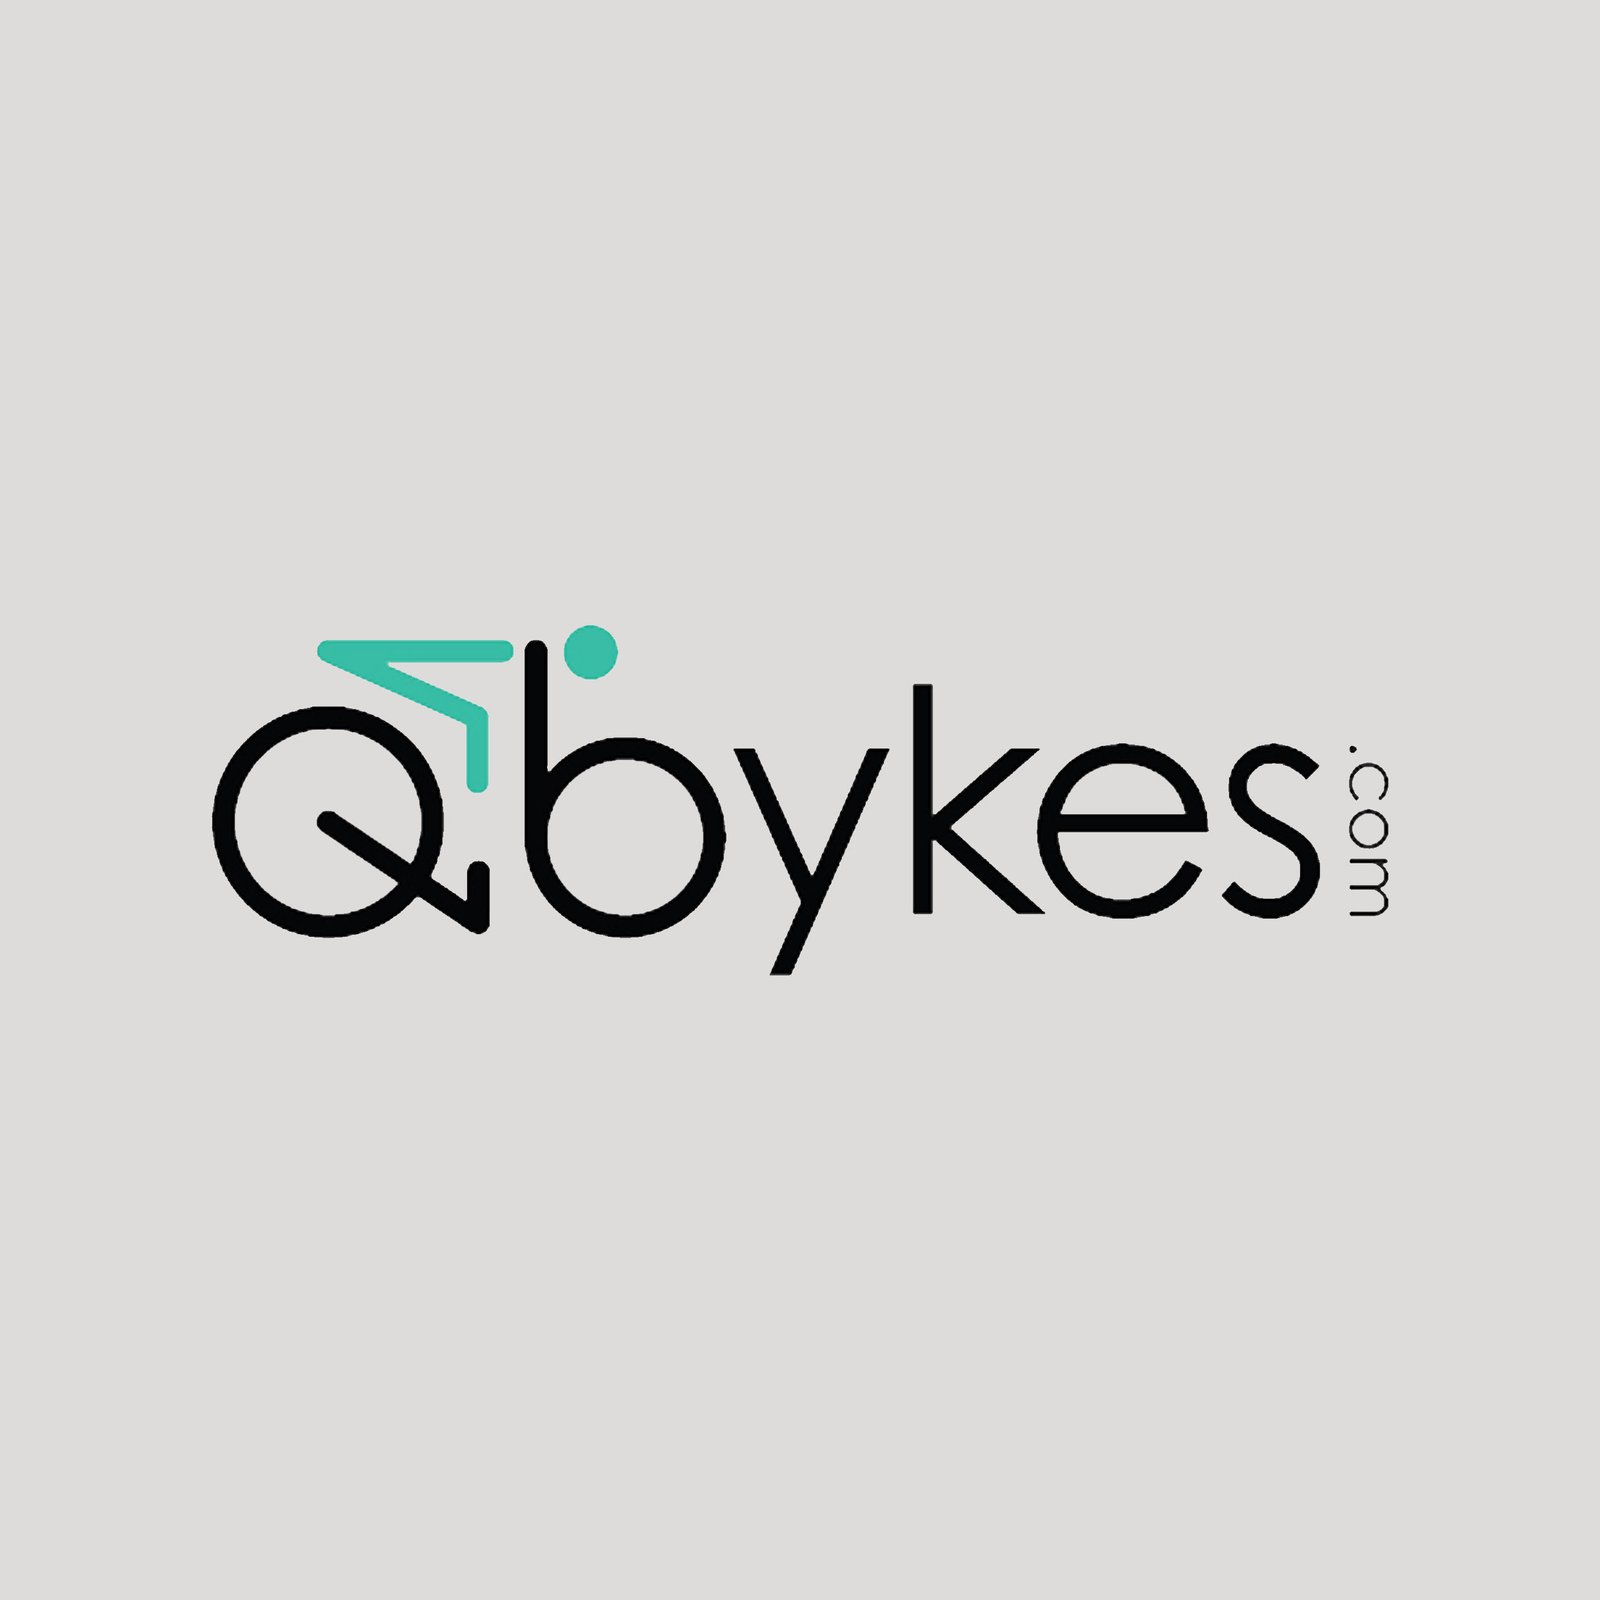 Qbykes Byke sharing in Qatar